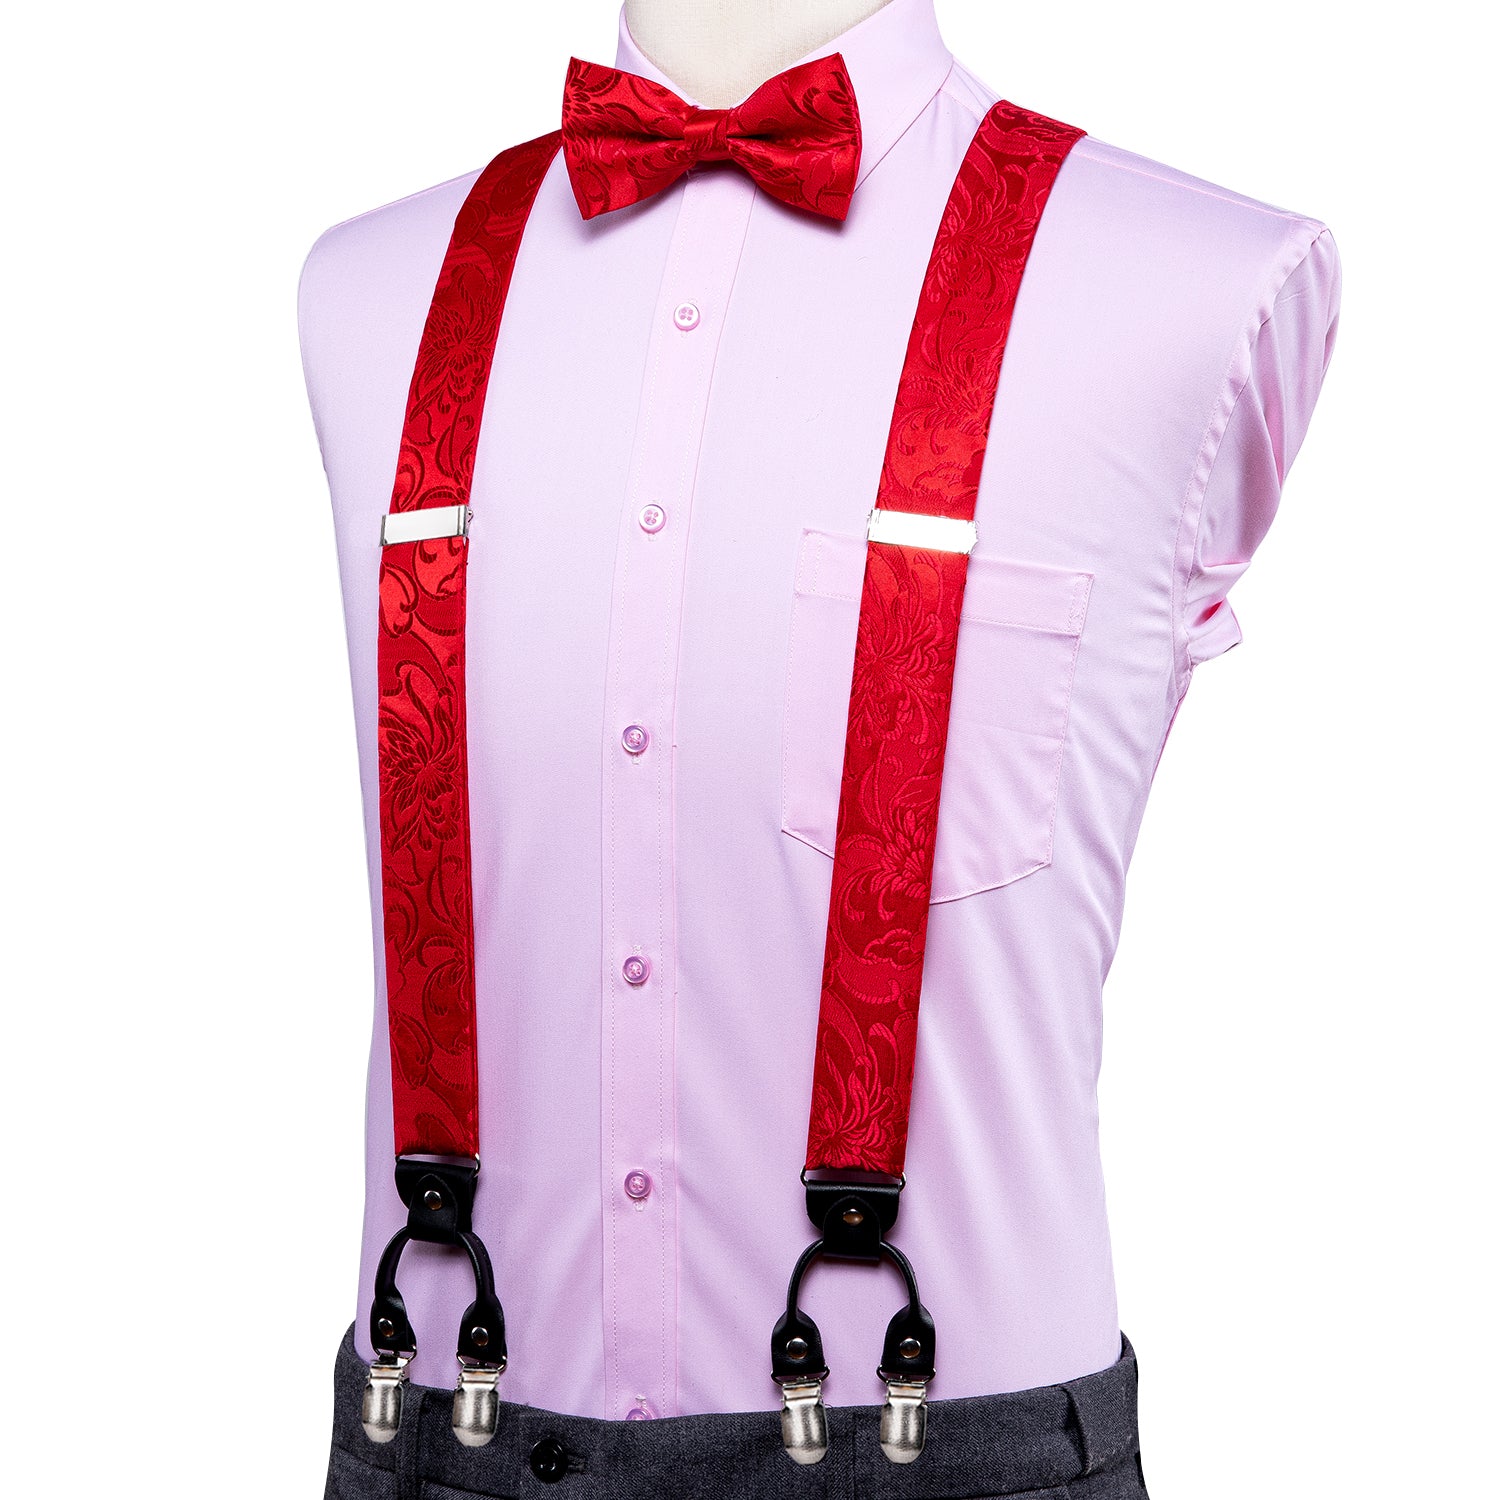 Red Floral  Suspender Bow Tie Handkerchief Cufflinks Set